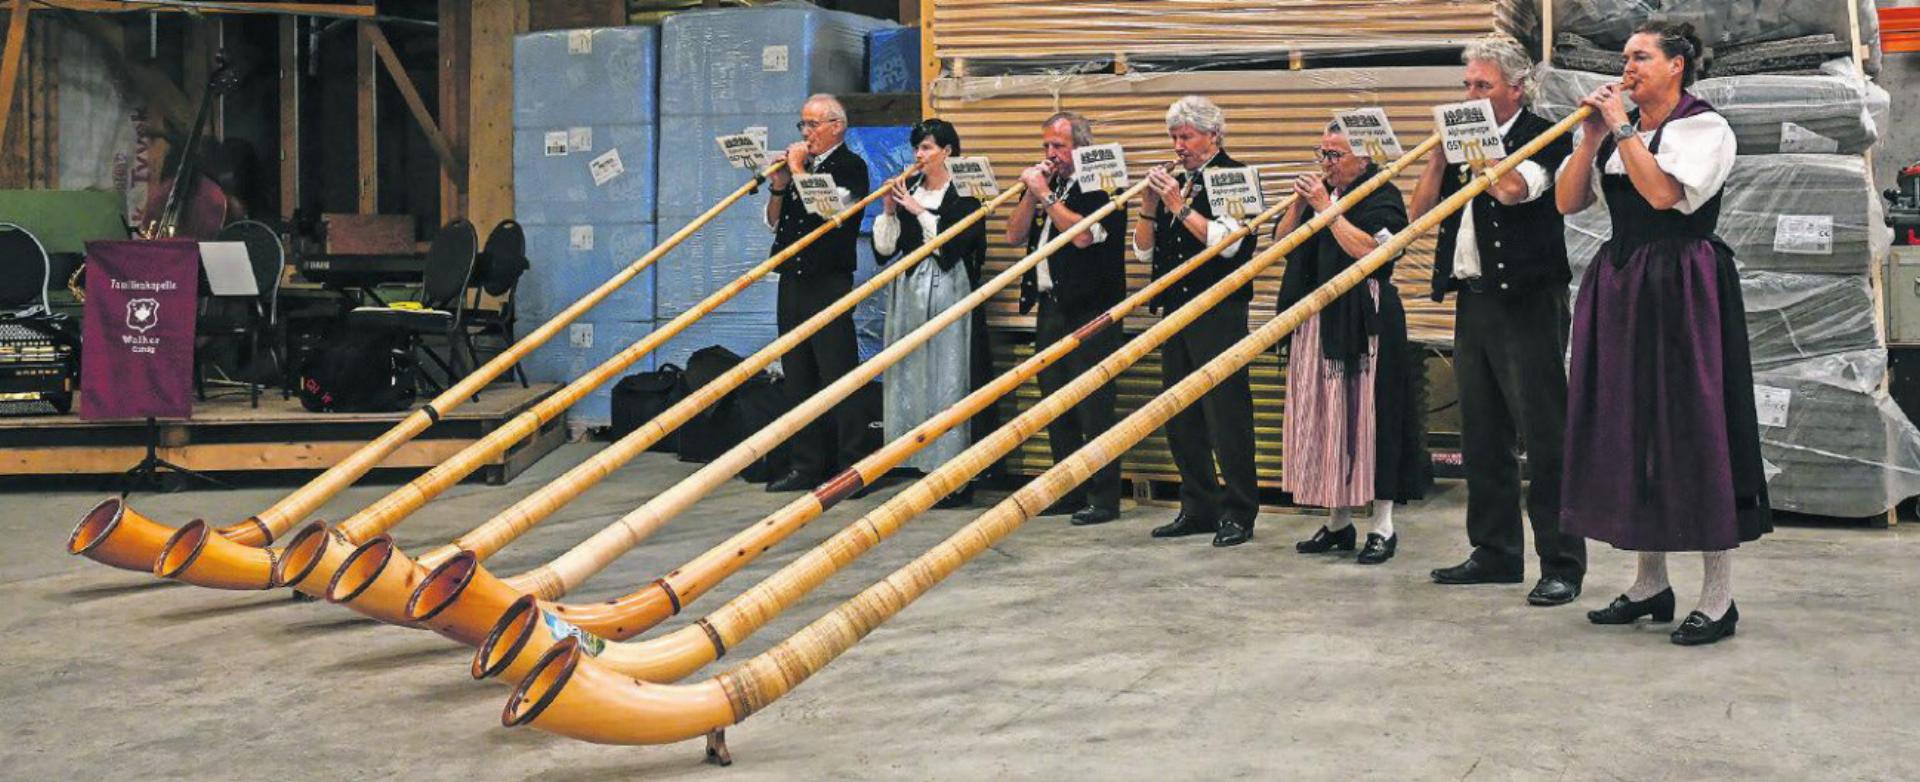 Die Alphorngruppe Gstaad bei ihrem Auftritt in den Hallen der Arnold Reuteler Holzbau AG. FOTOS: PHILIPPE CHEVALIER